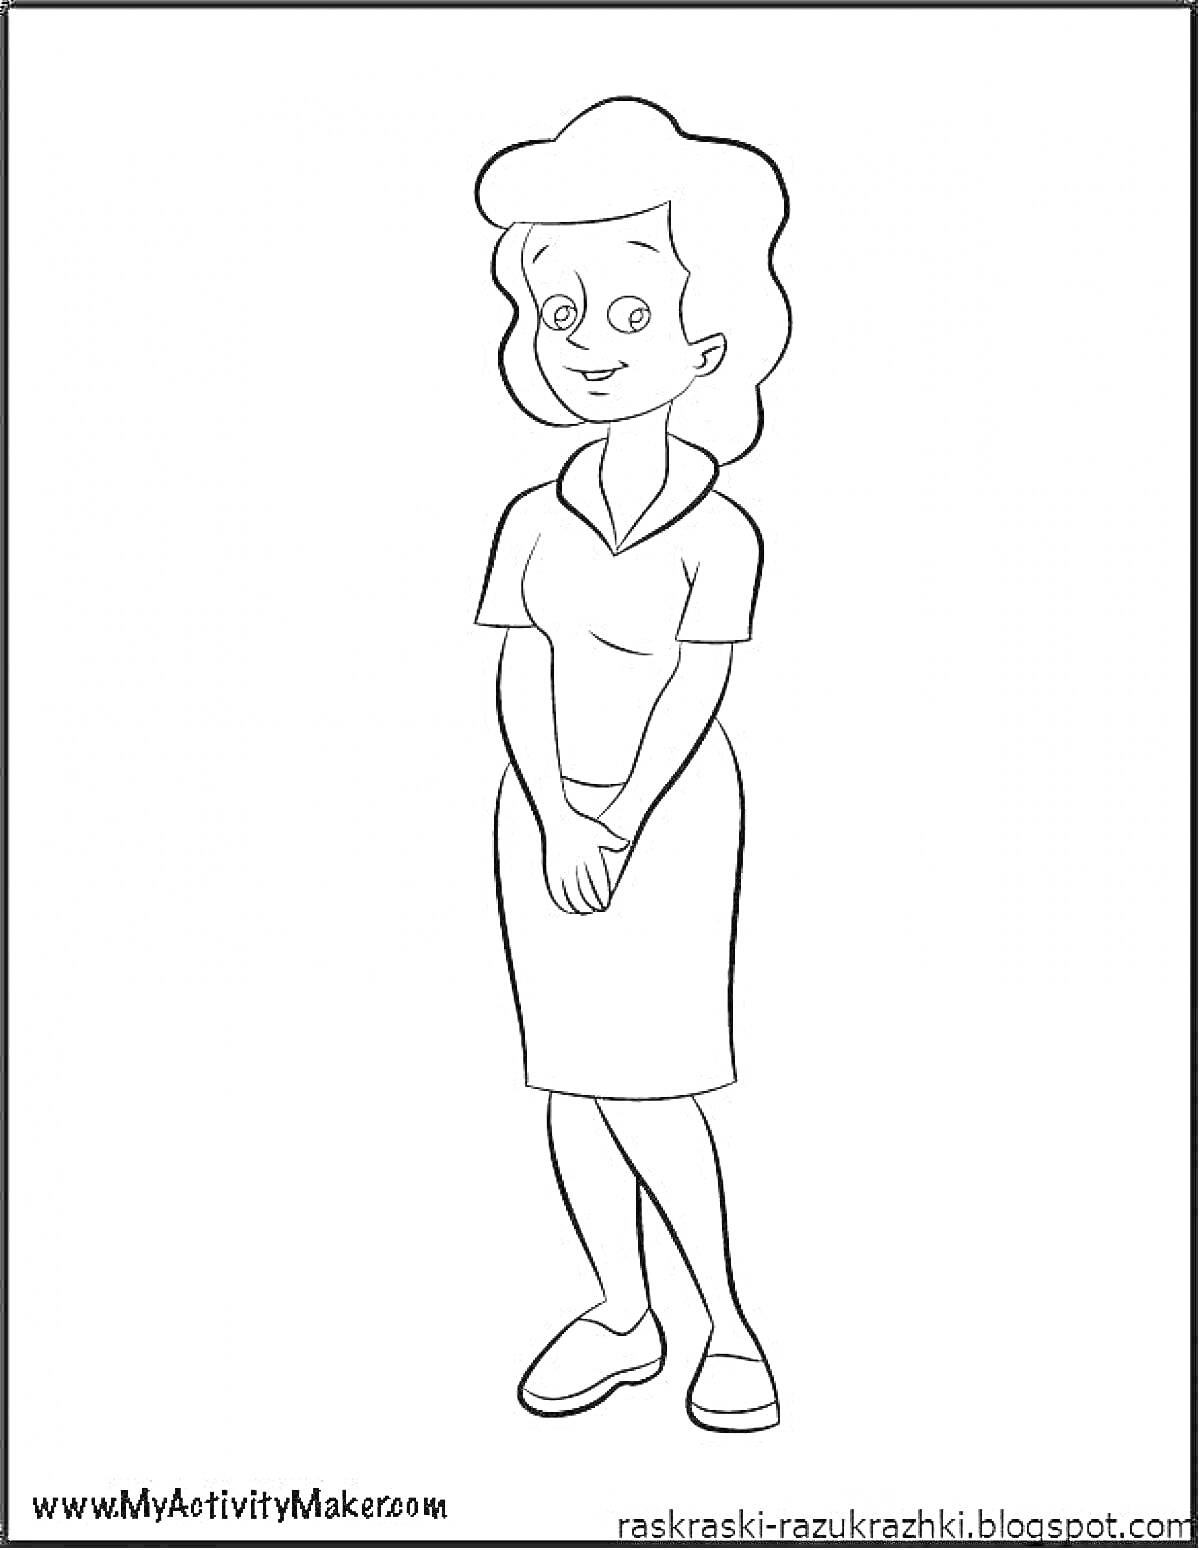 Раскраска Женщина с короткими волосами в платье со сложенными руками